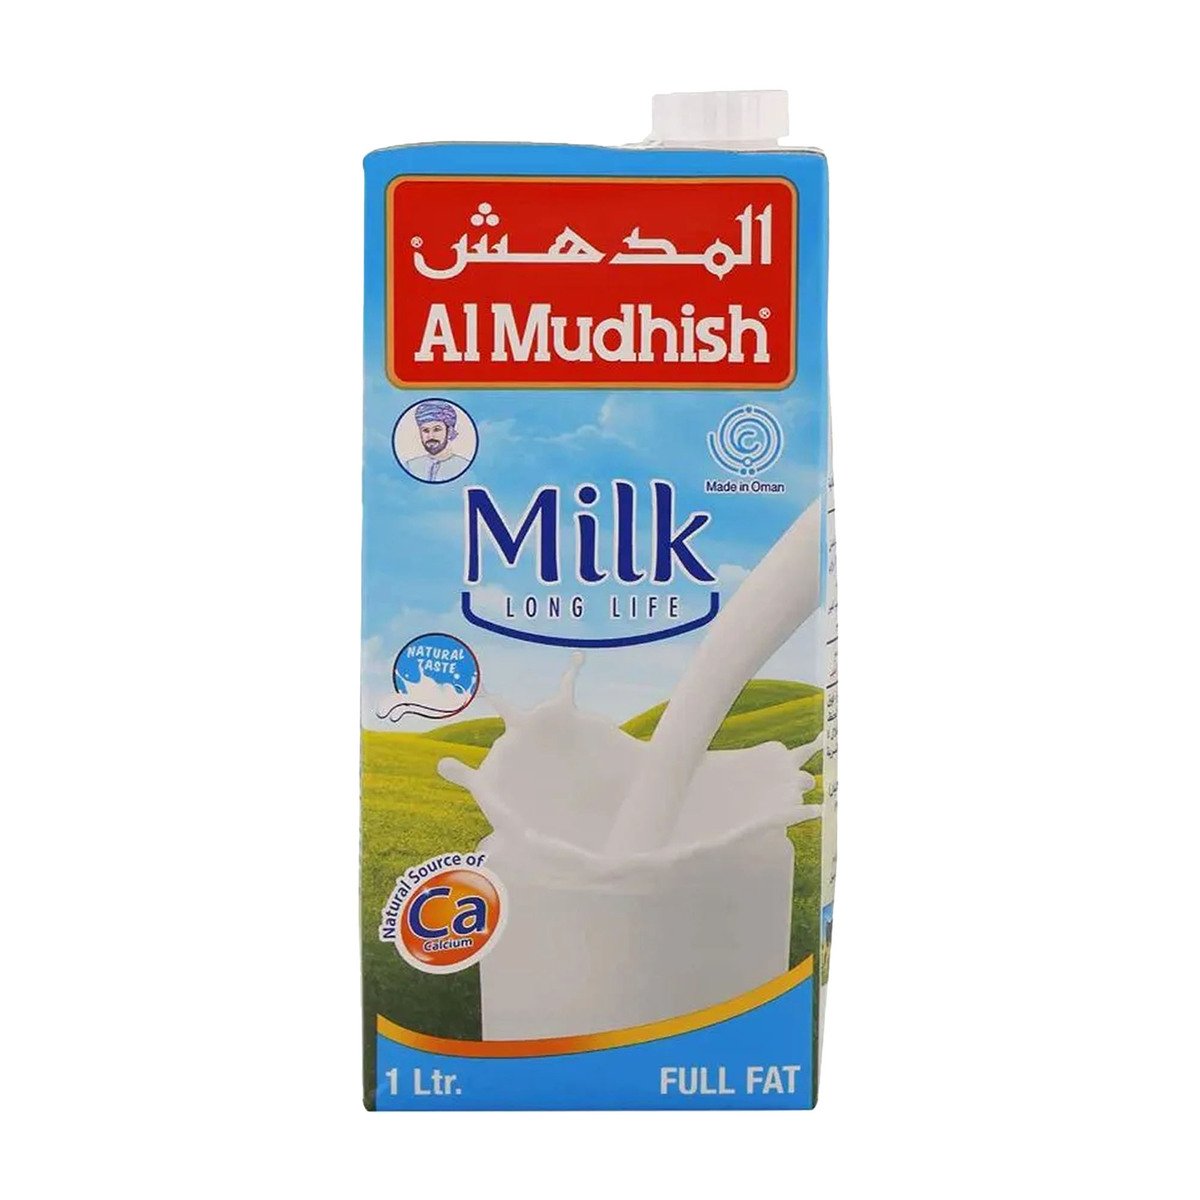 اشتري قم بشراء Al Mudish Milk Long Life Full Fat 4 x 1 Litre Online at Best Price من الموقع - من لولو هايبر ماركت UHT Milk في الامارات